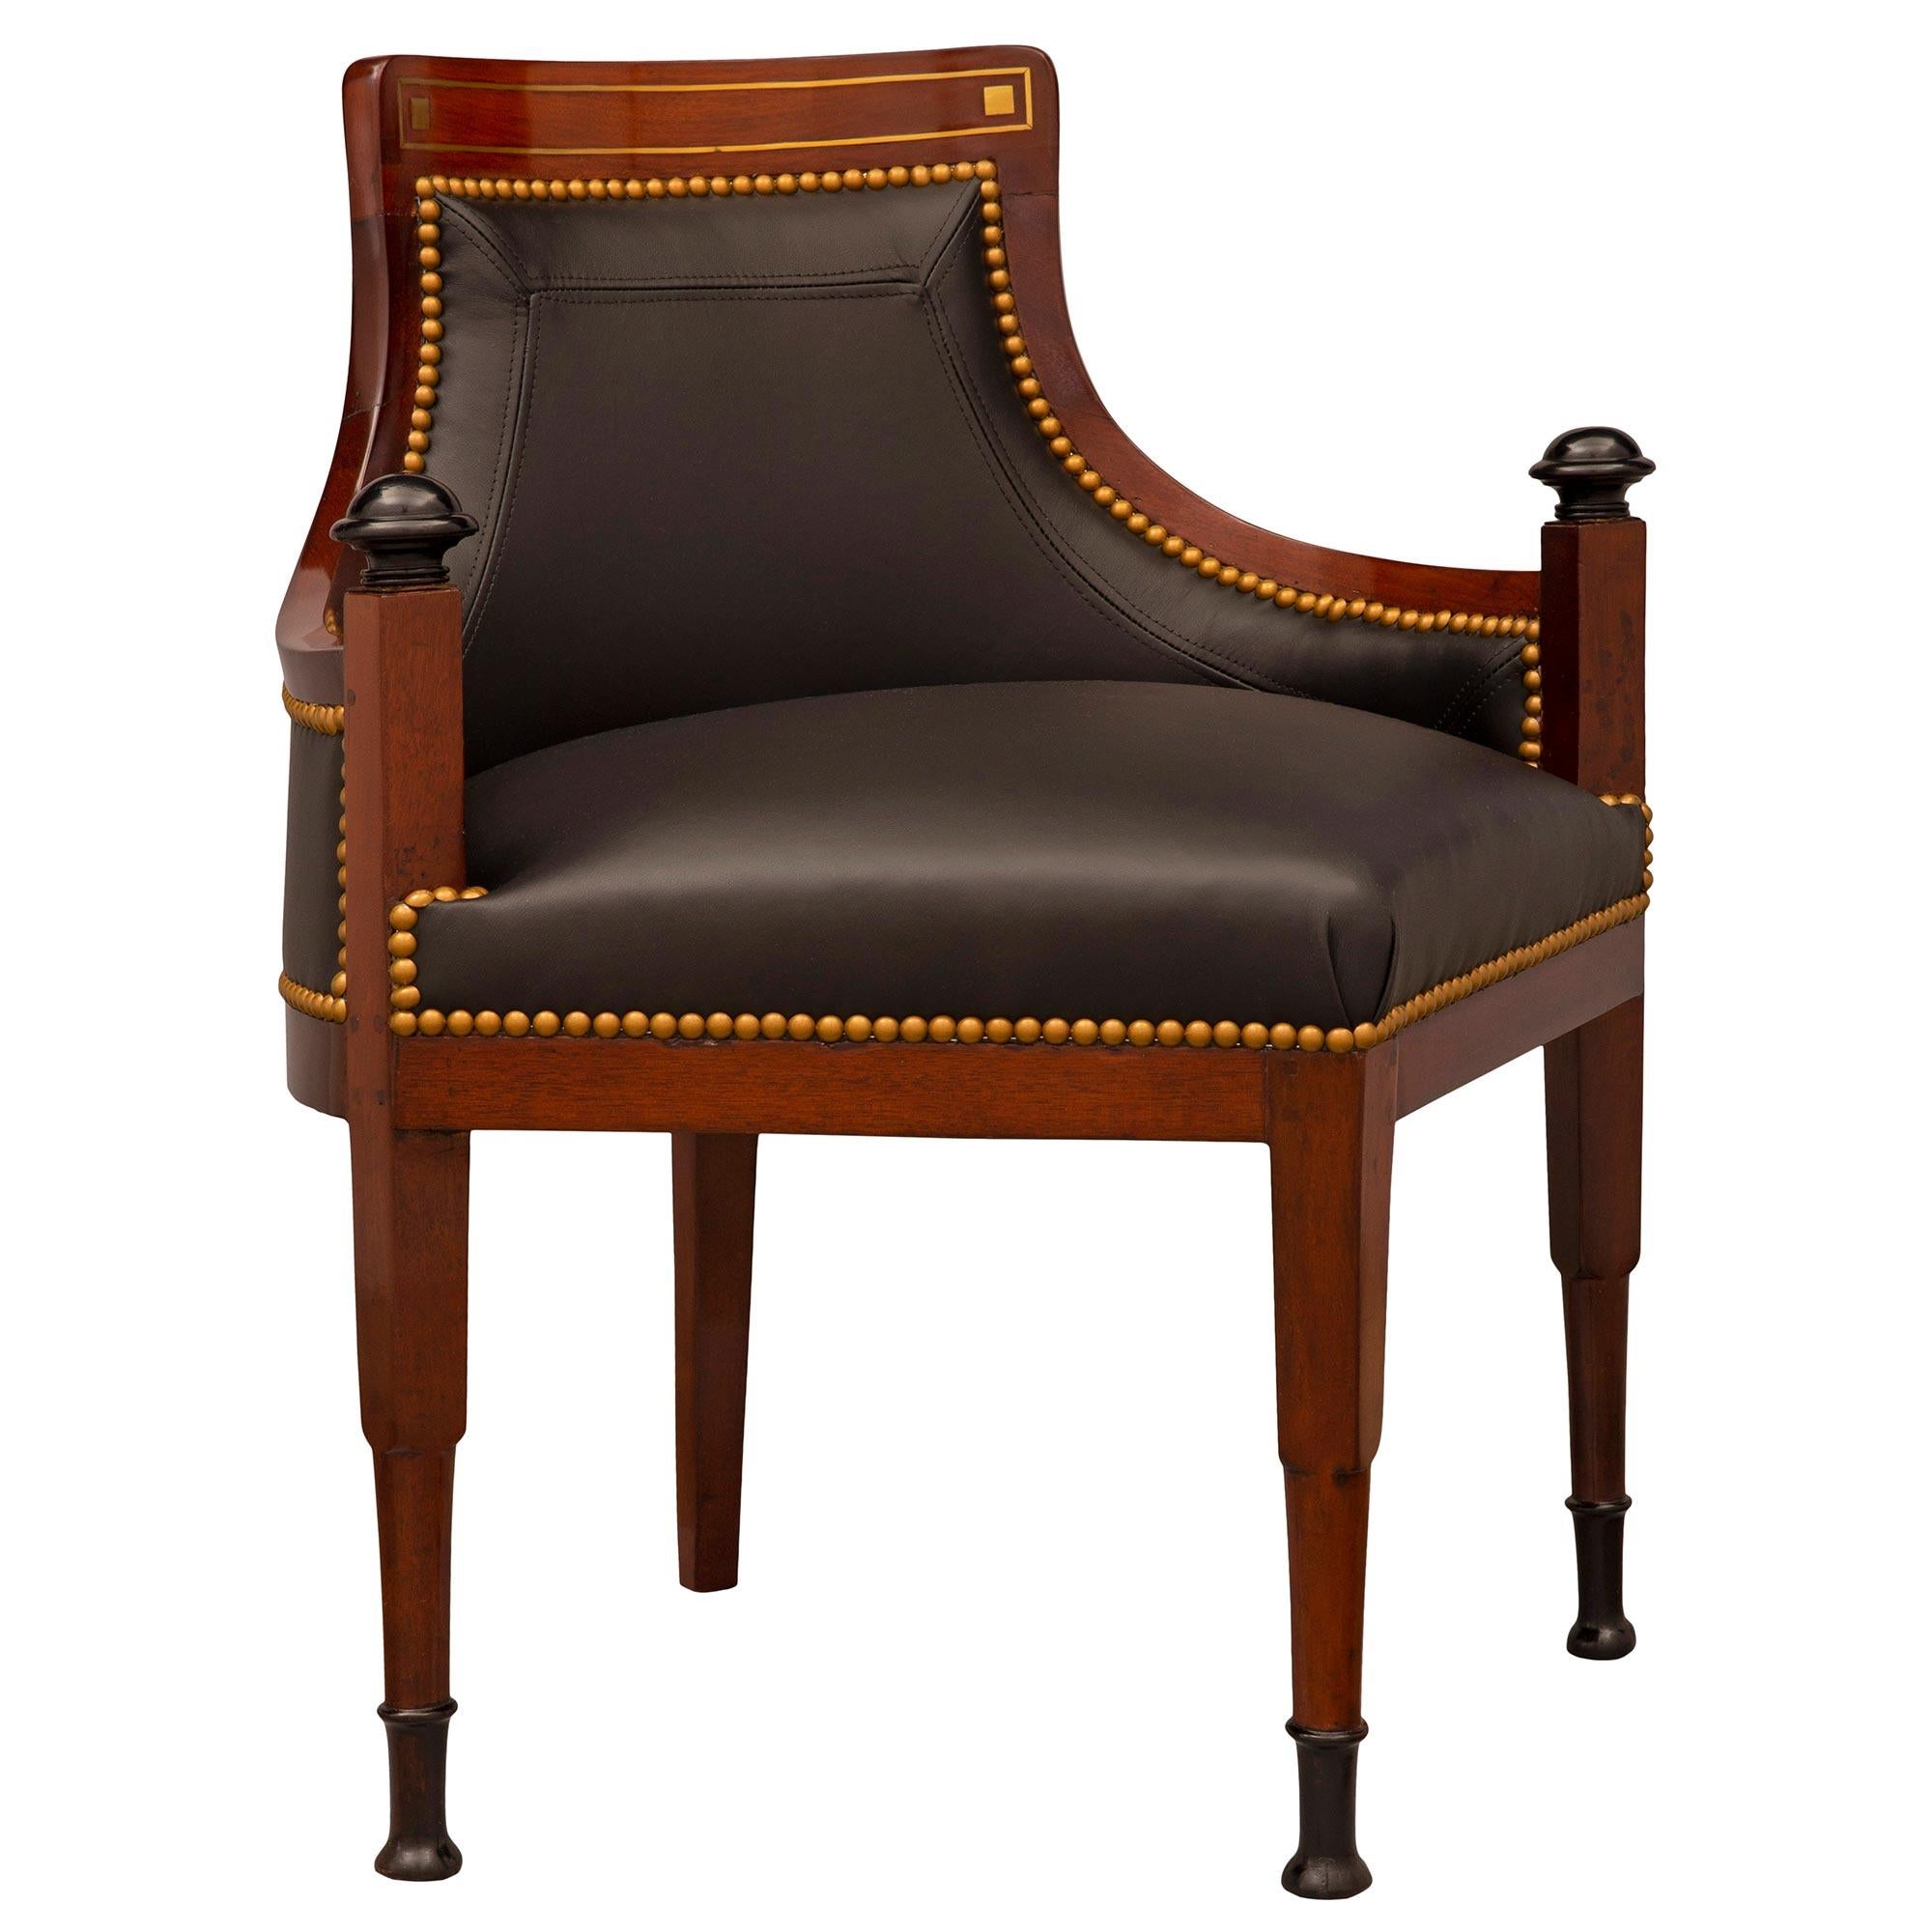 Une paire exceptionnelle et extrêmement unique de chaises néoclassiques en noyer ébonisé et en laiton de la Baltique du 19e siècle. Noyer, bois fruitier ébonisé et laiton. Chaque chaise est surélevée par des pieds carrés et circulaires en noyer,